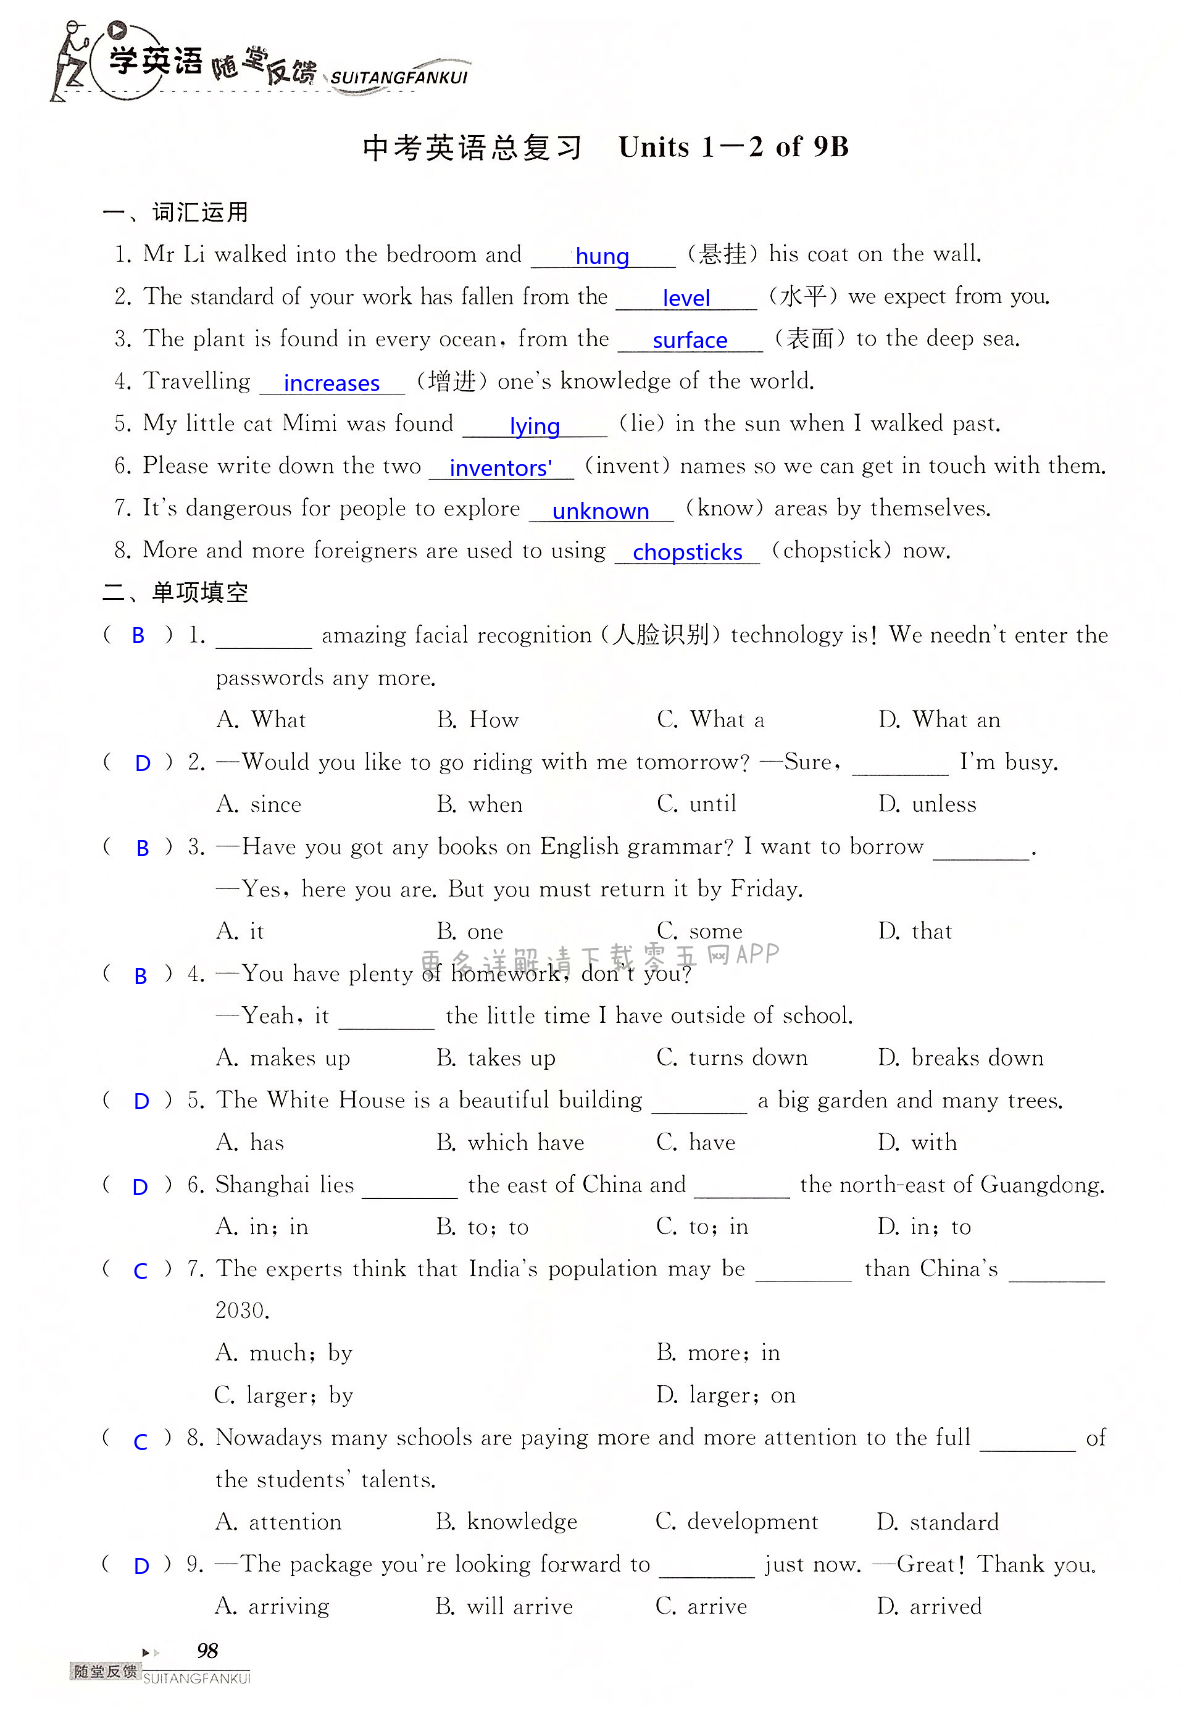 中考英语总复习 Units 1-2 of 9B - 第98页